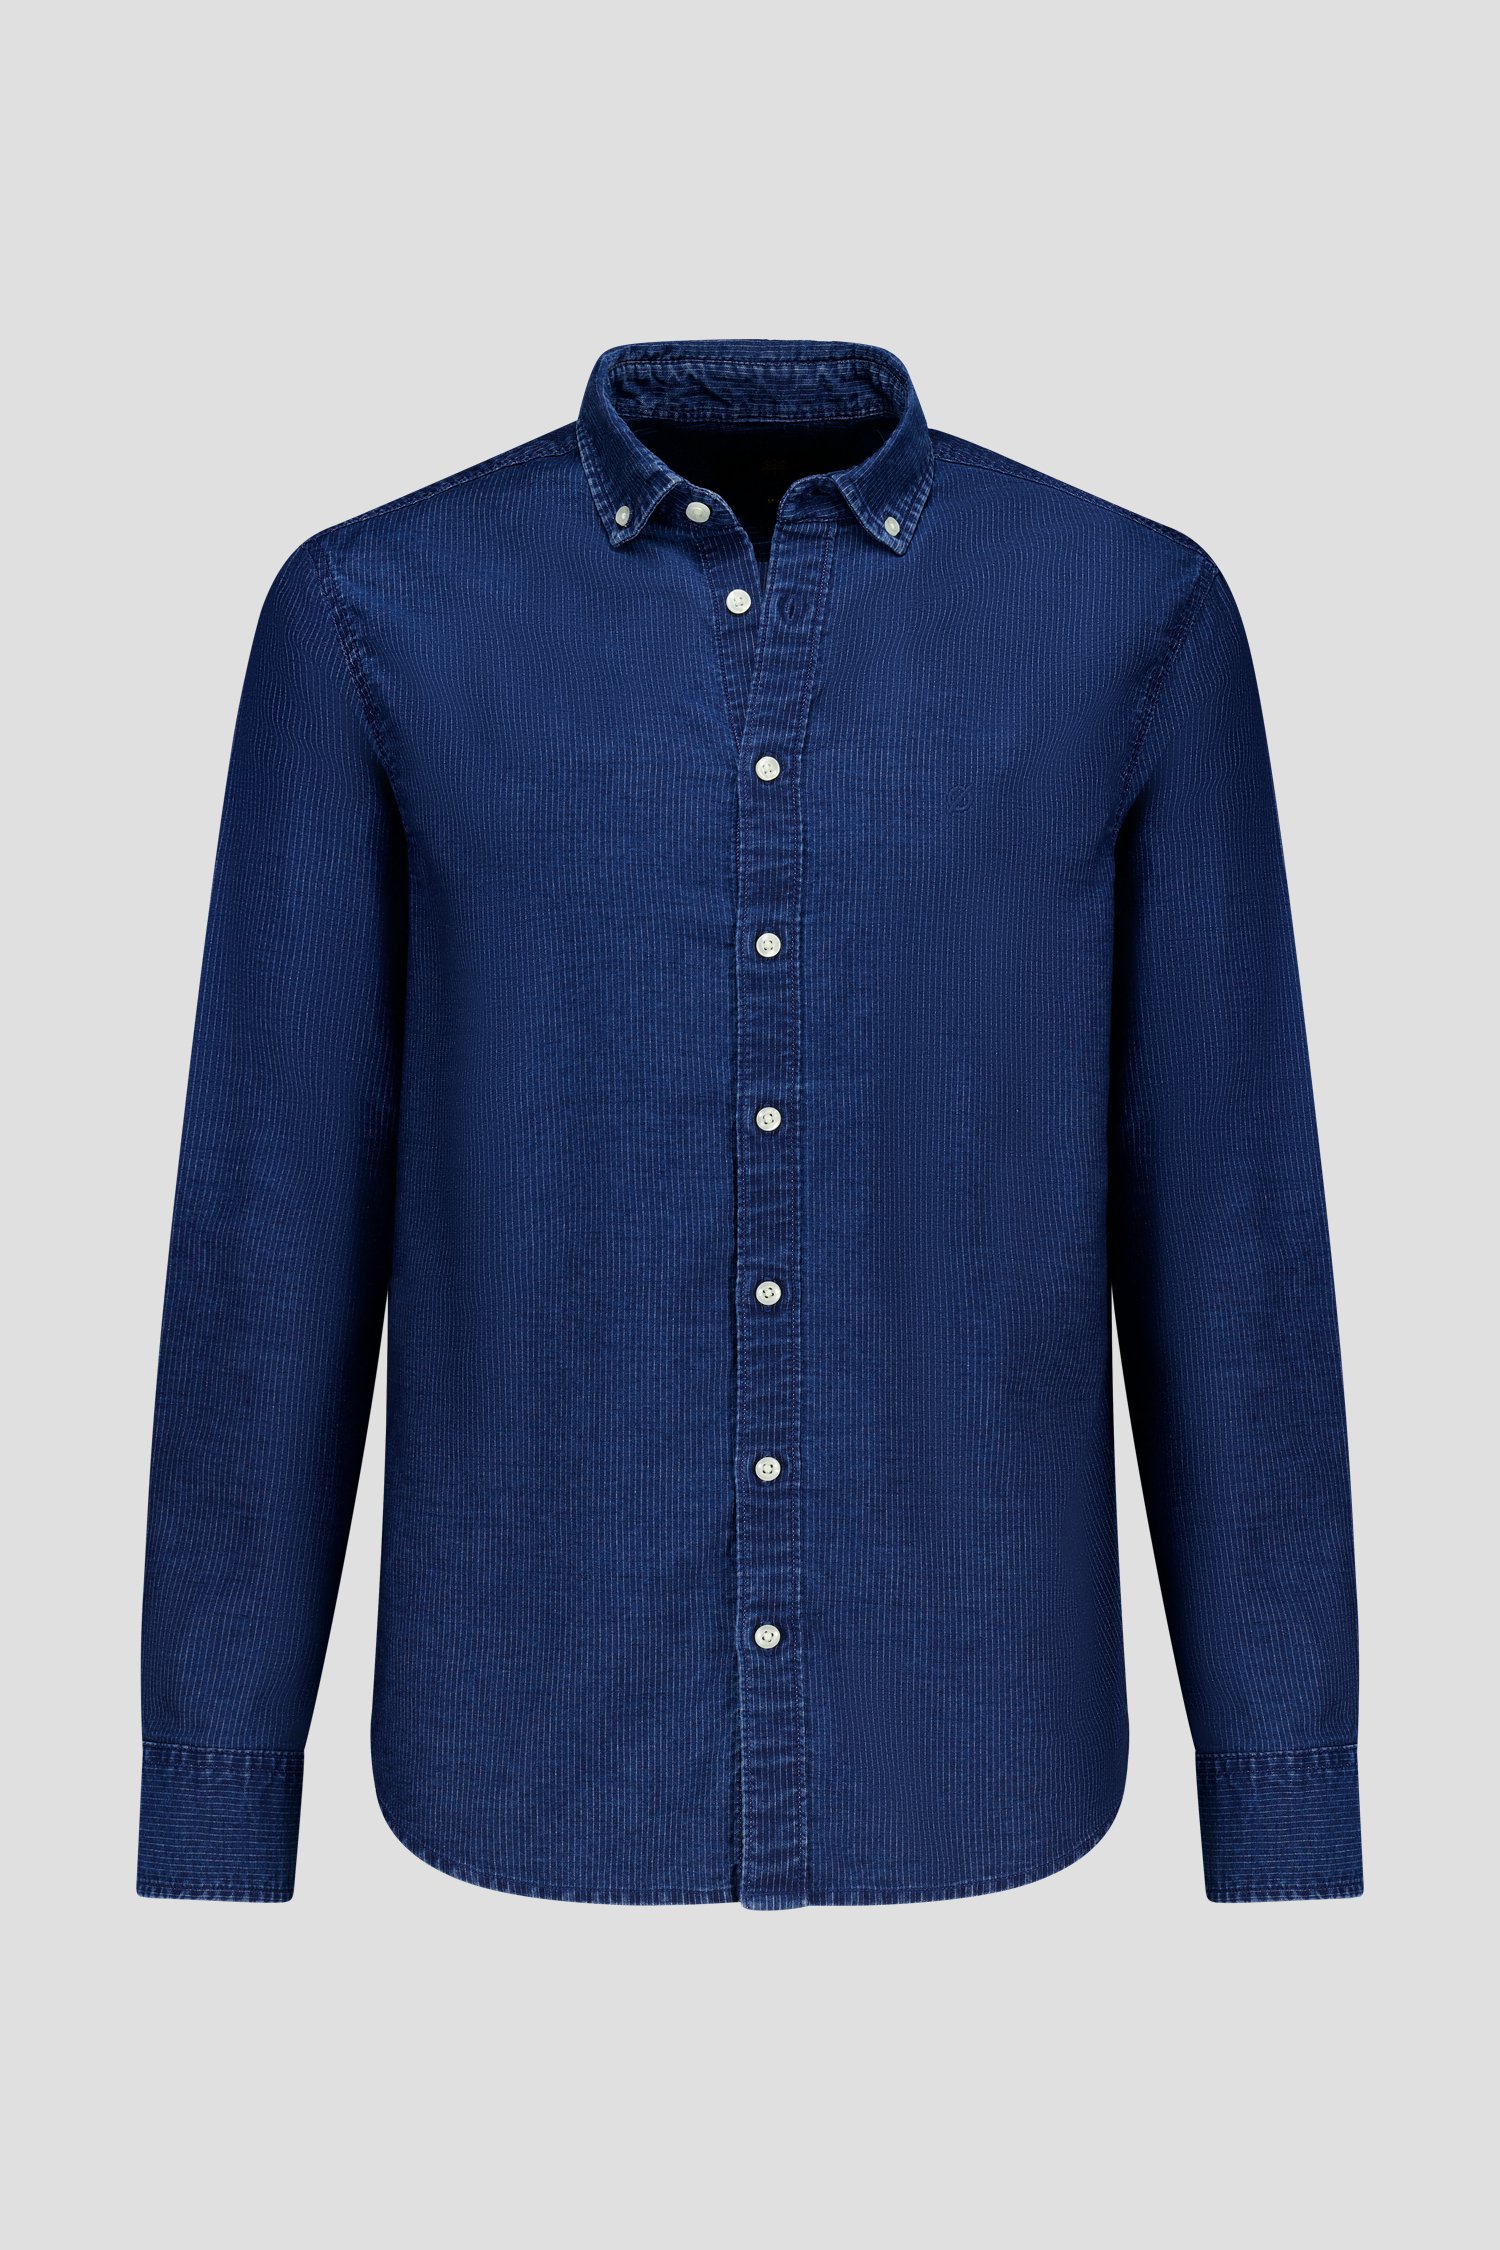 Jeansblauw hemd met fijne streep - Regular fit van Ravøtt voor Heren